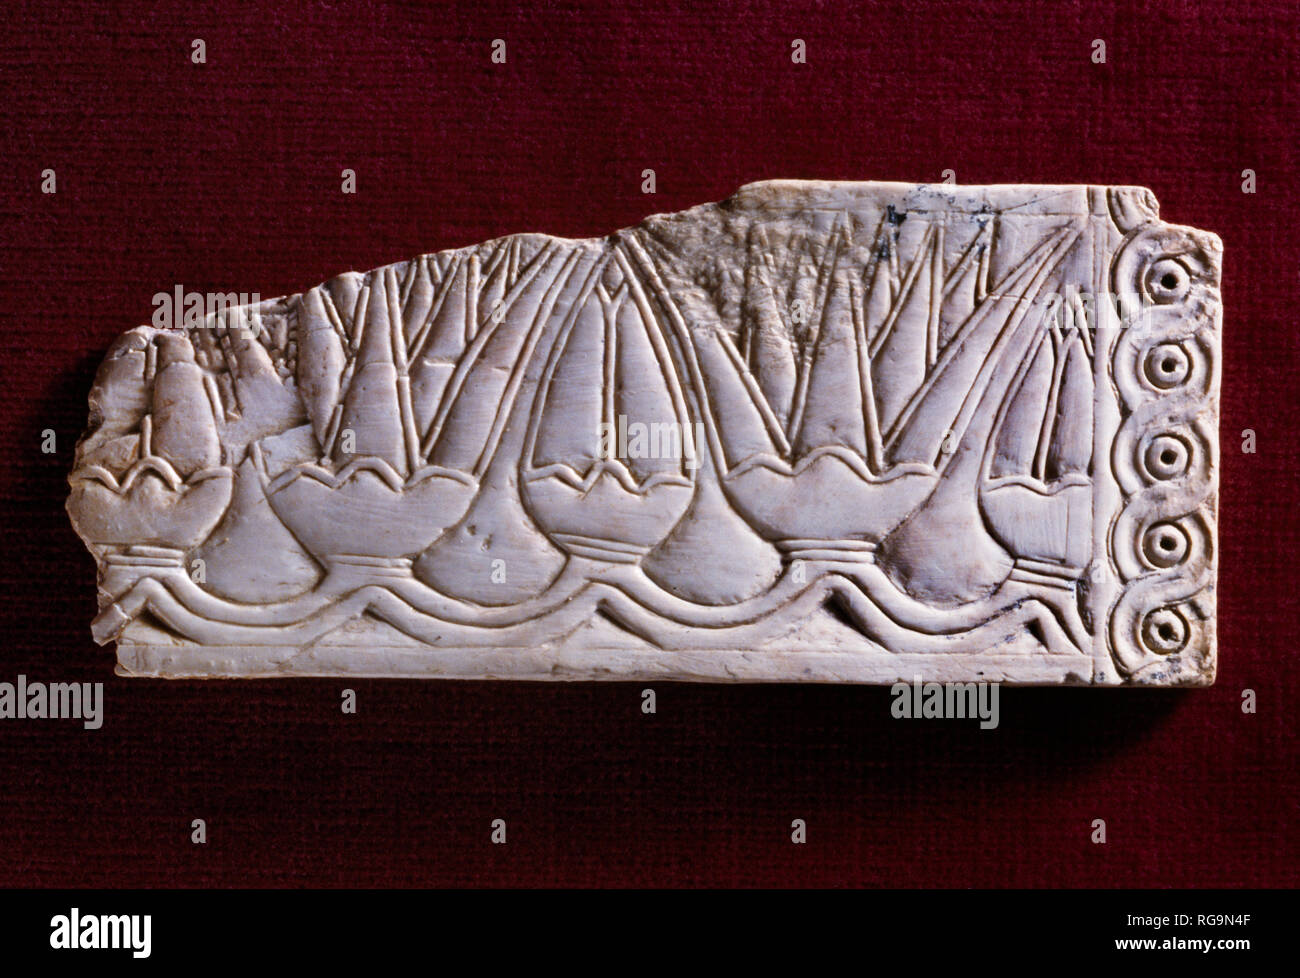 Fiori di loto & gemme: Nimrud Avorio da Camera SW12 Fort Shalmaneser entro la città assira di Nimrud, nord Iraq, fotografato nel Museo di Ipswich. Foto Stock